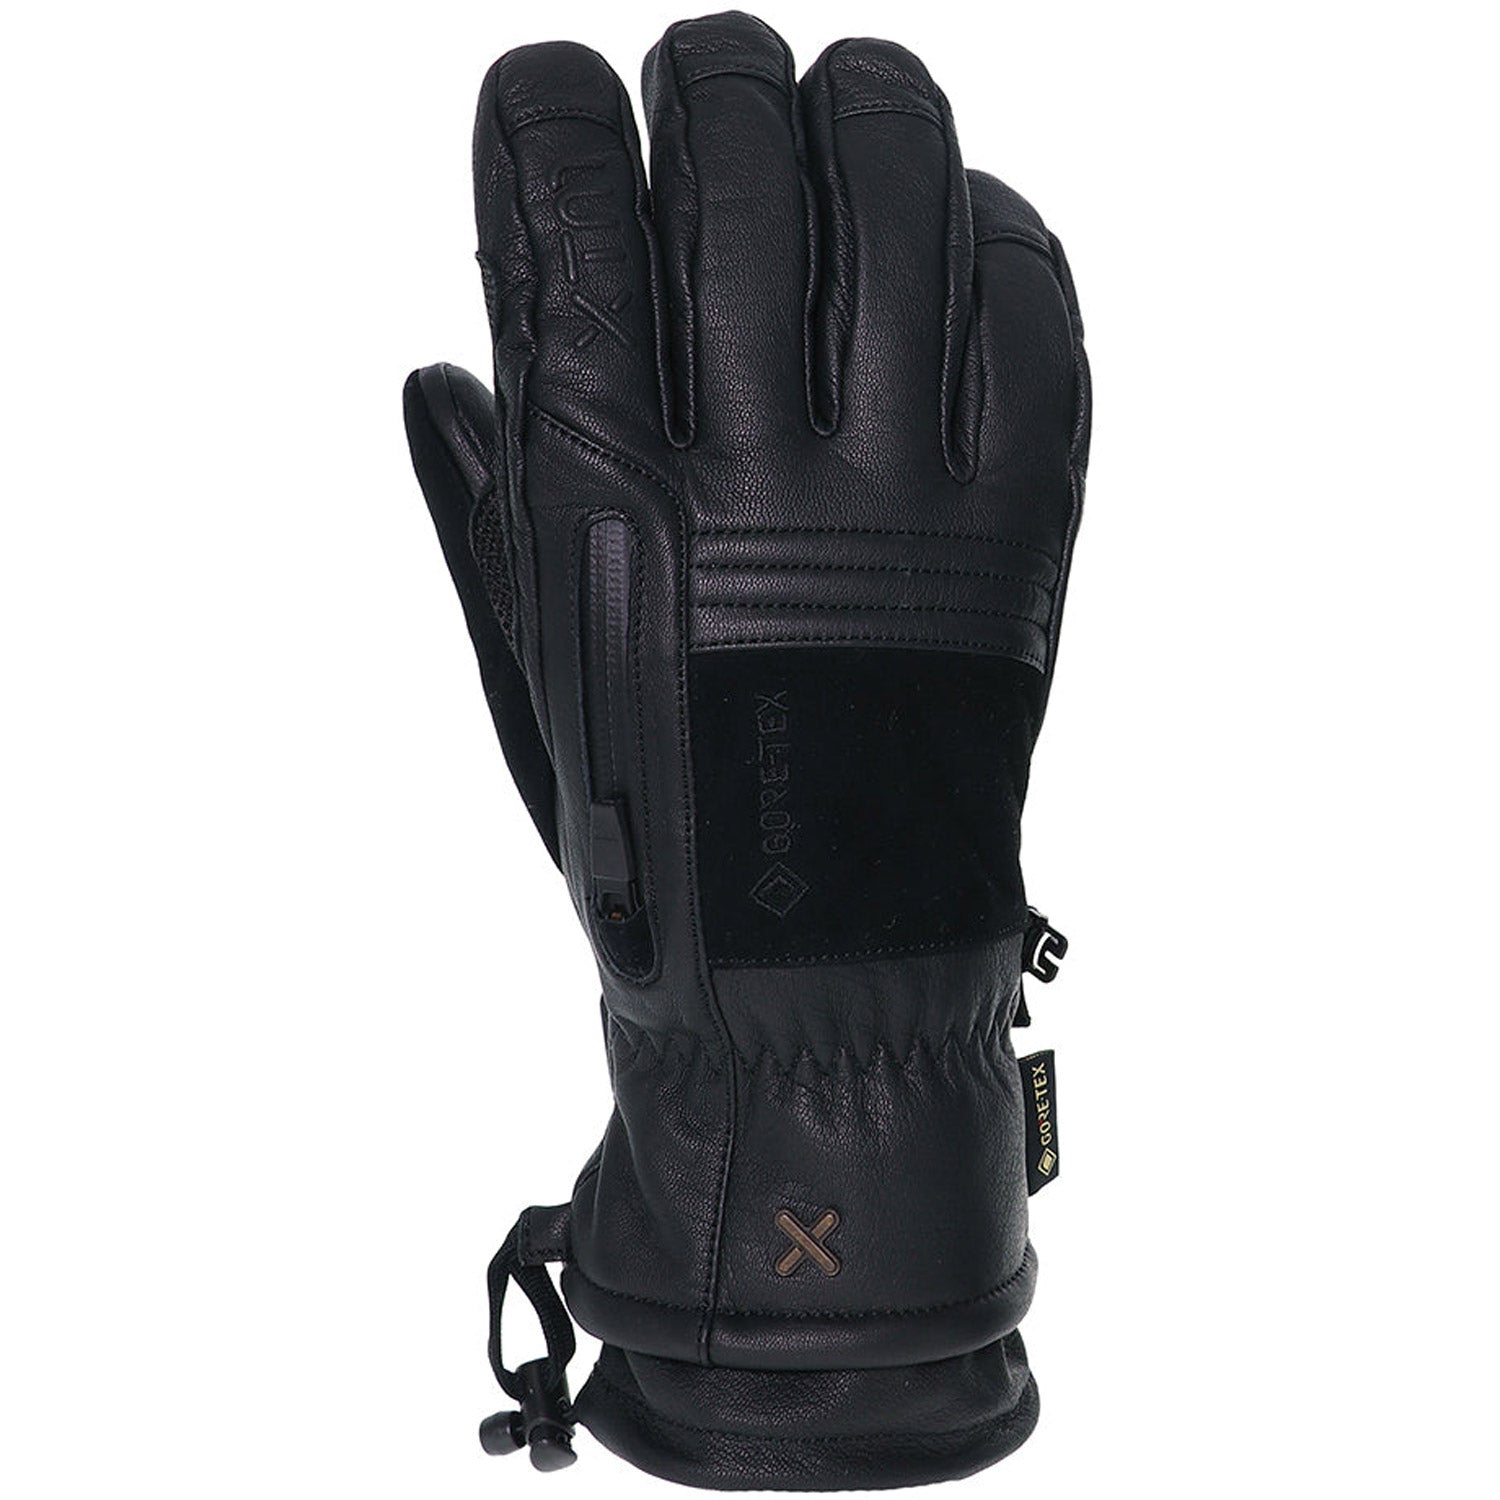 Everest GORE-TEX Snow Glove